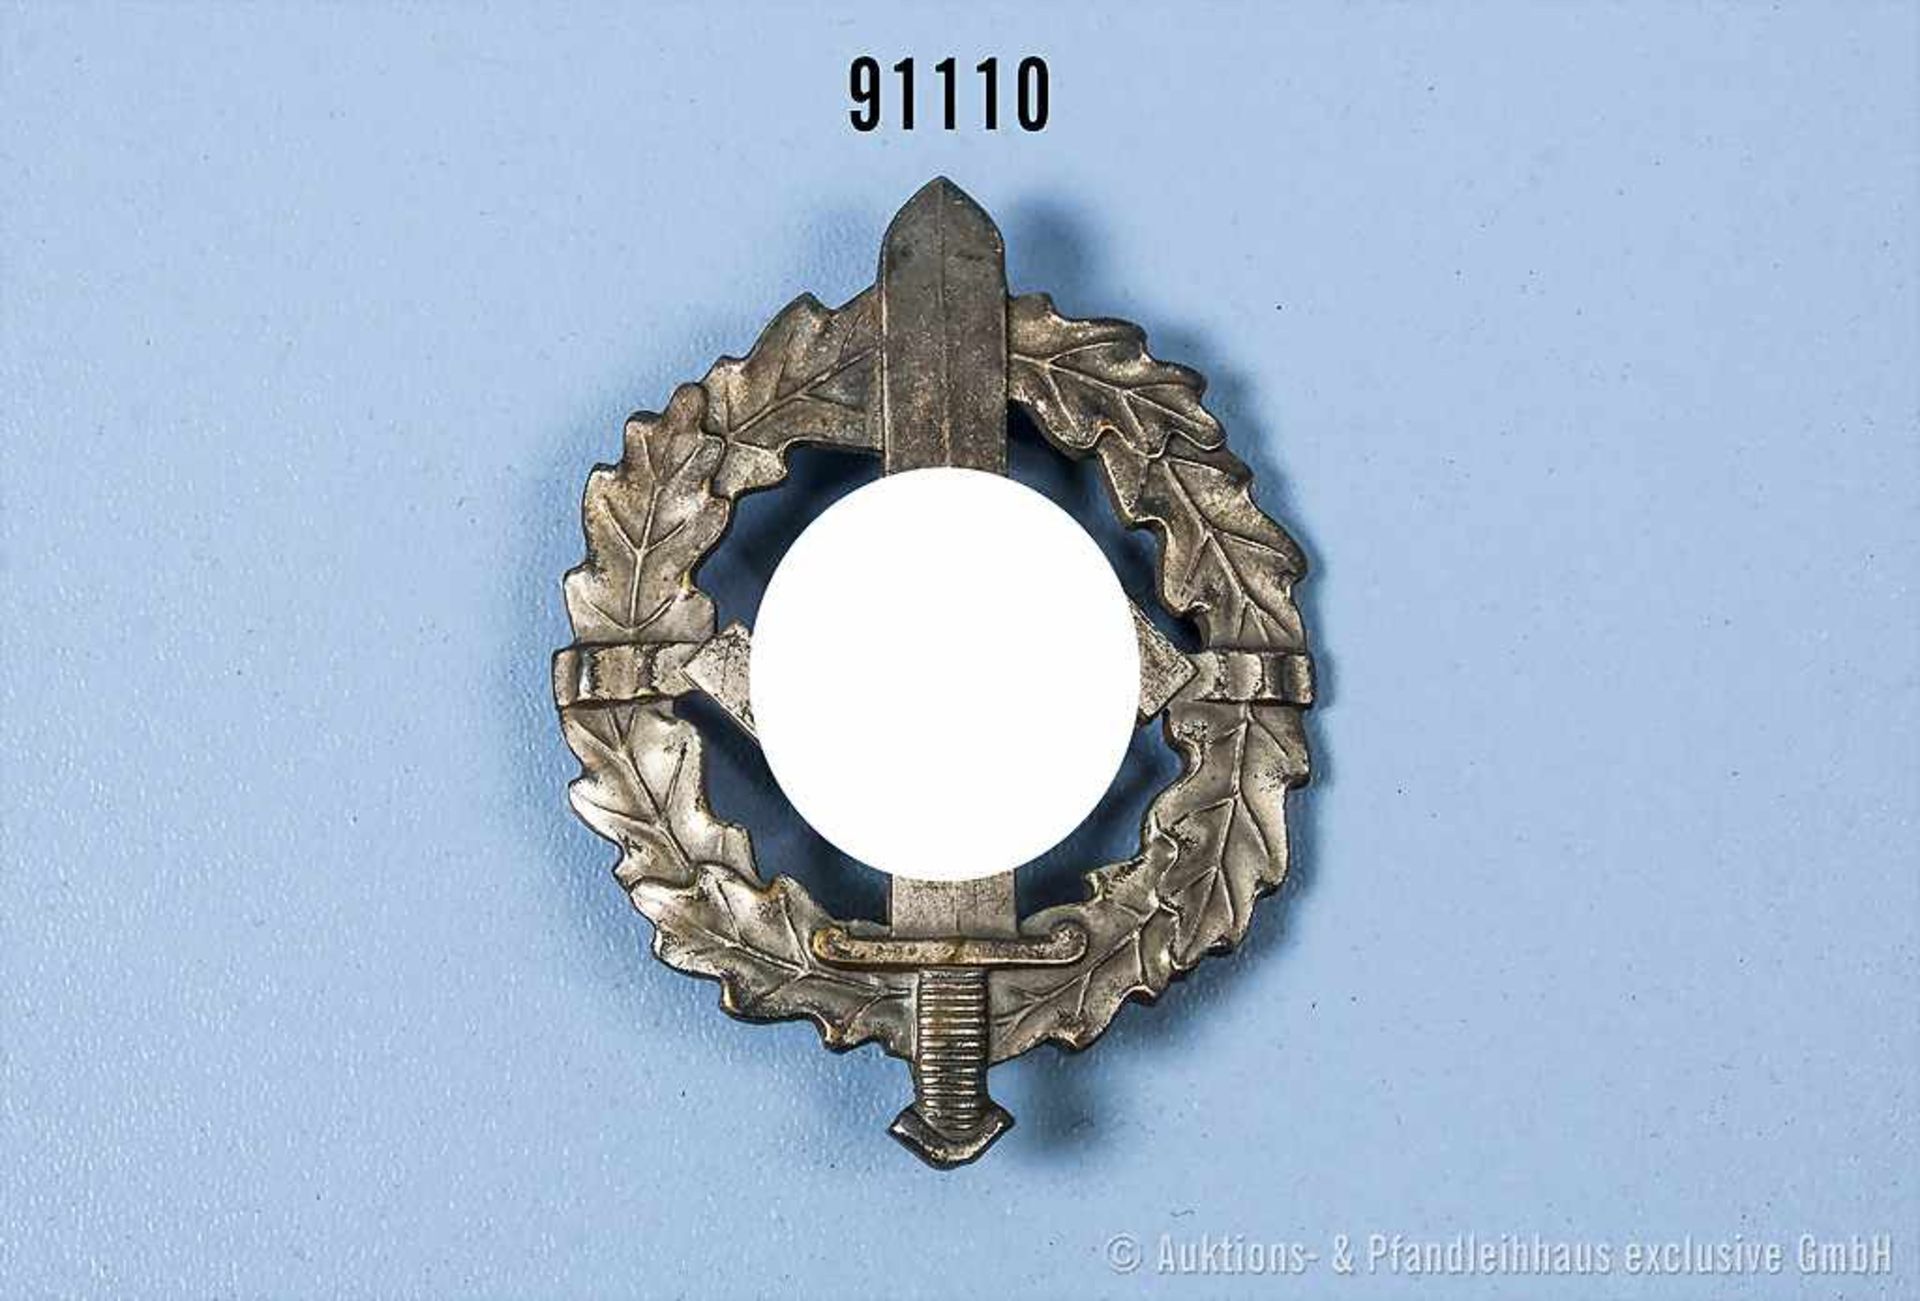 SA-Sportabzeichen in Silber, Buntmetallausf., rückseitig Verleihungsnummer "12754" und Hersteller "